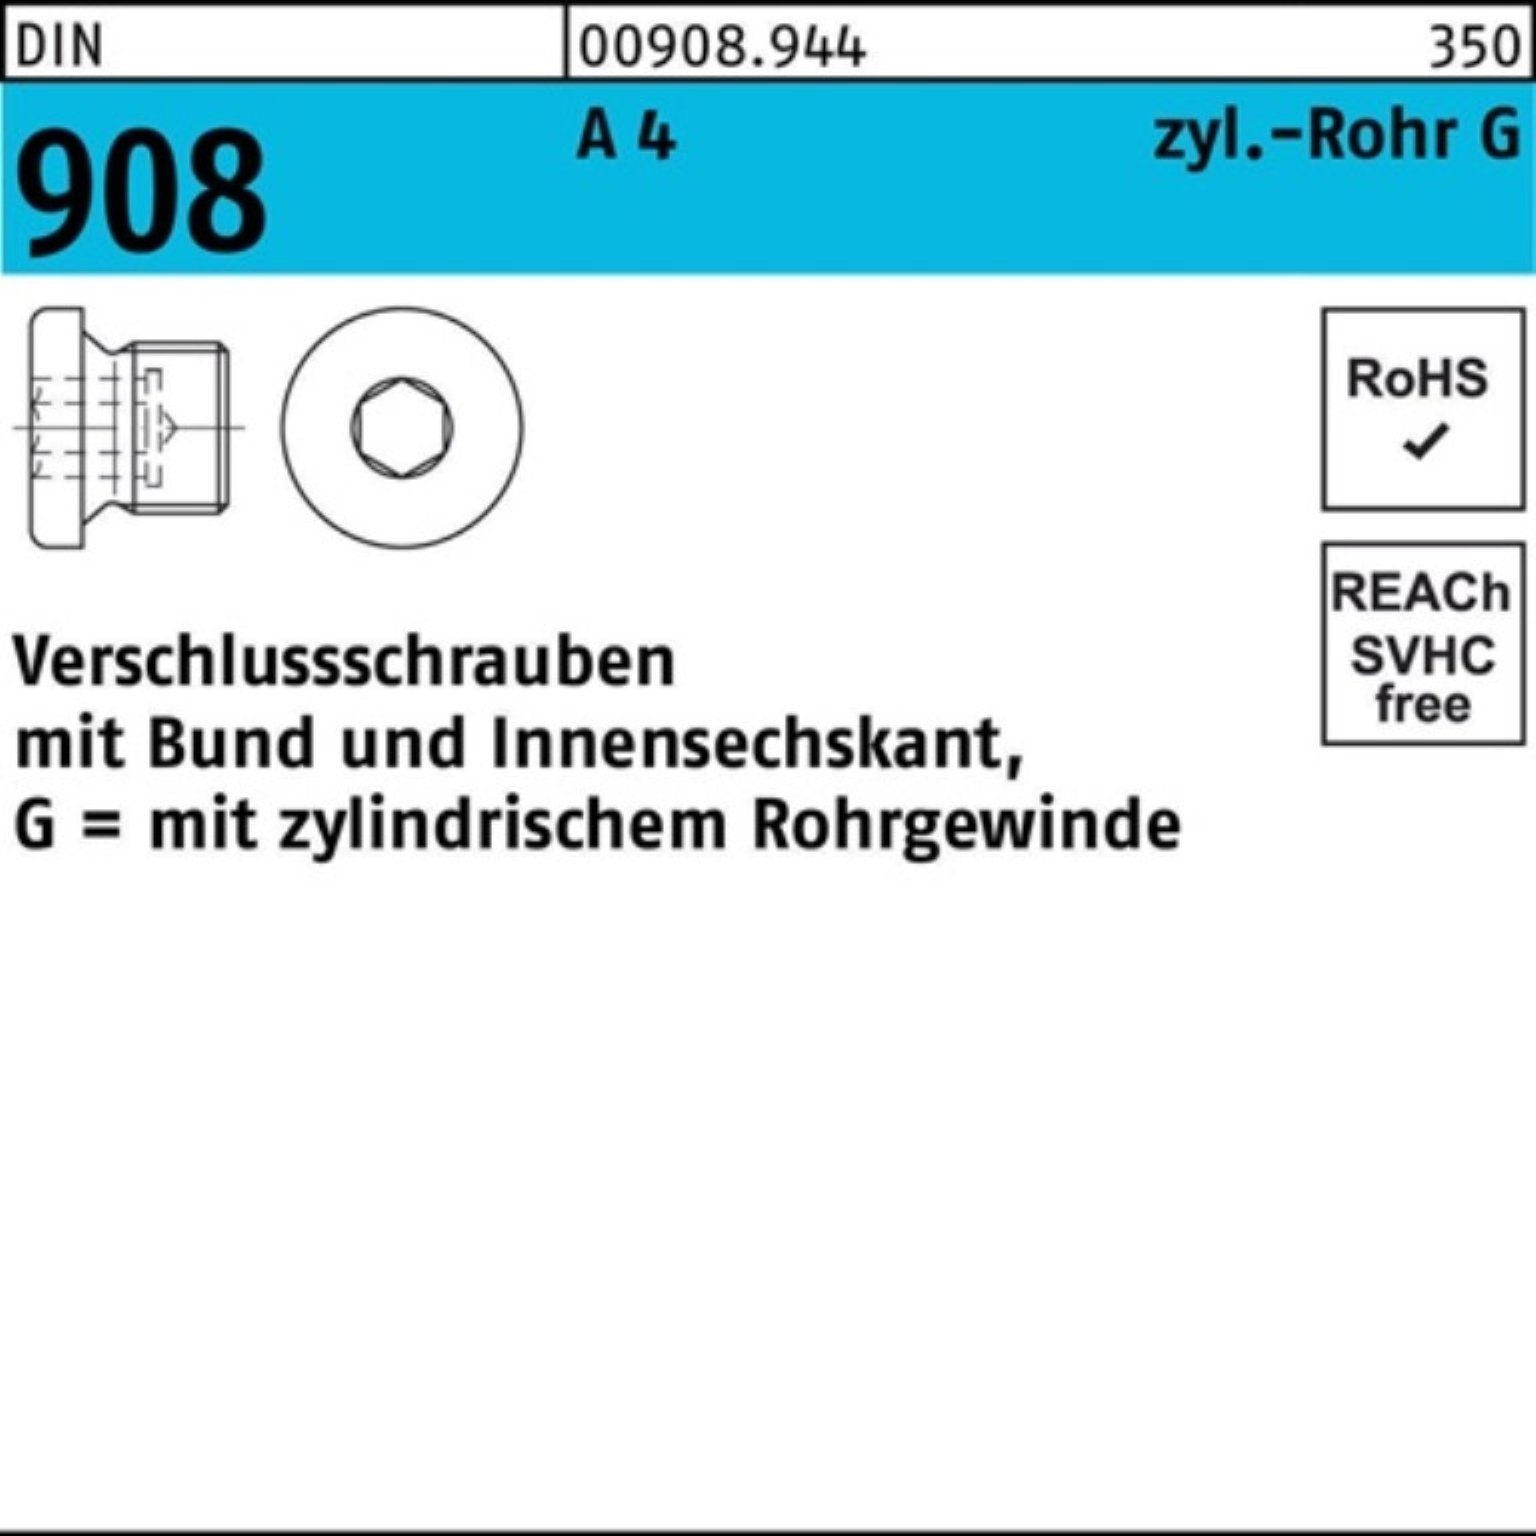 Reyher Schraube 100er Pack Verschlußschraube DIN 908 Bund/Innen-6kt G 1 1/4 A A 4 1 S